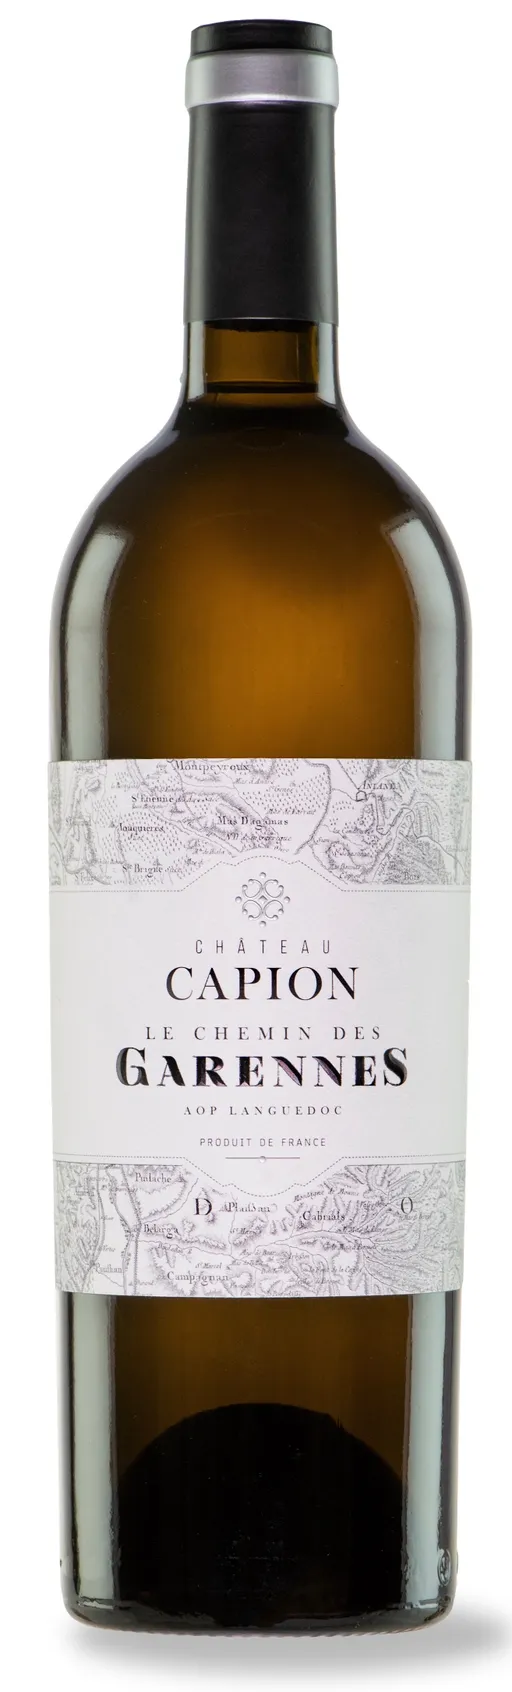 Château Capion Le Chemin des Garennes, White, 2016, Languedoc. Bottle image